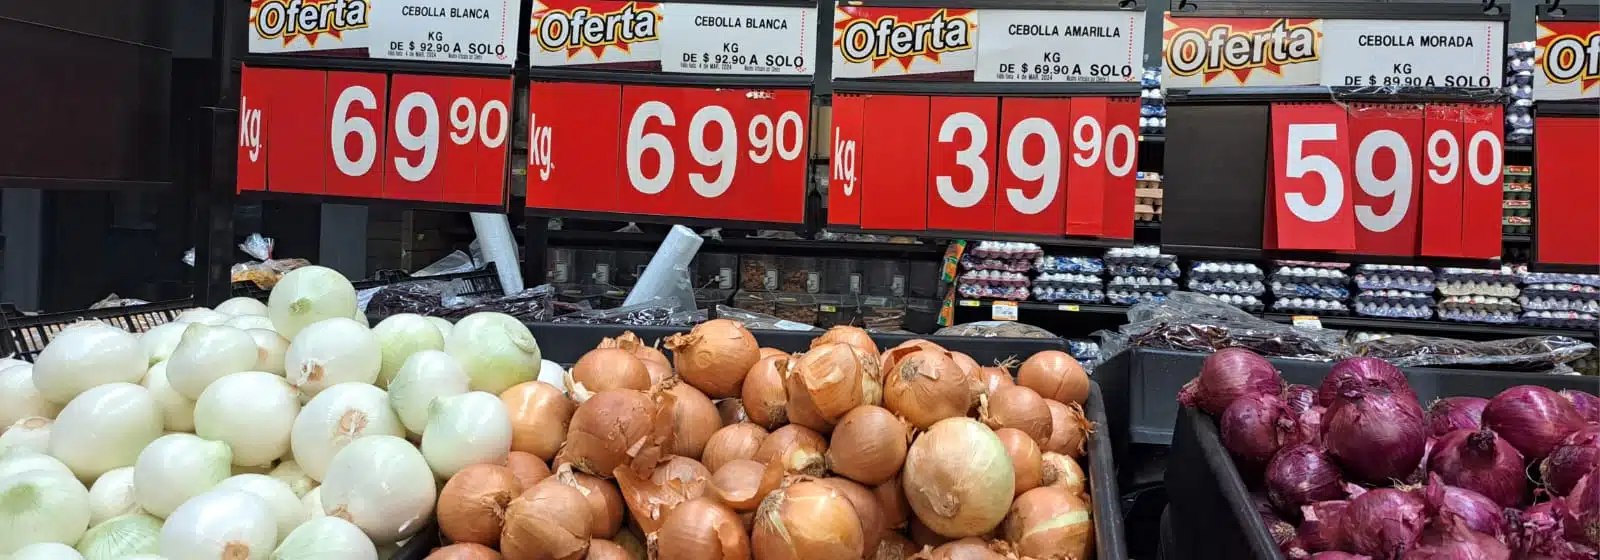 Precios de cebolla en supermercados